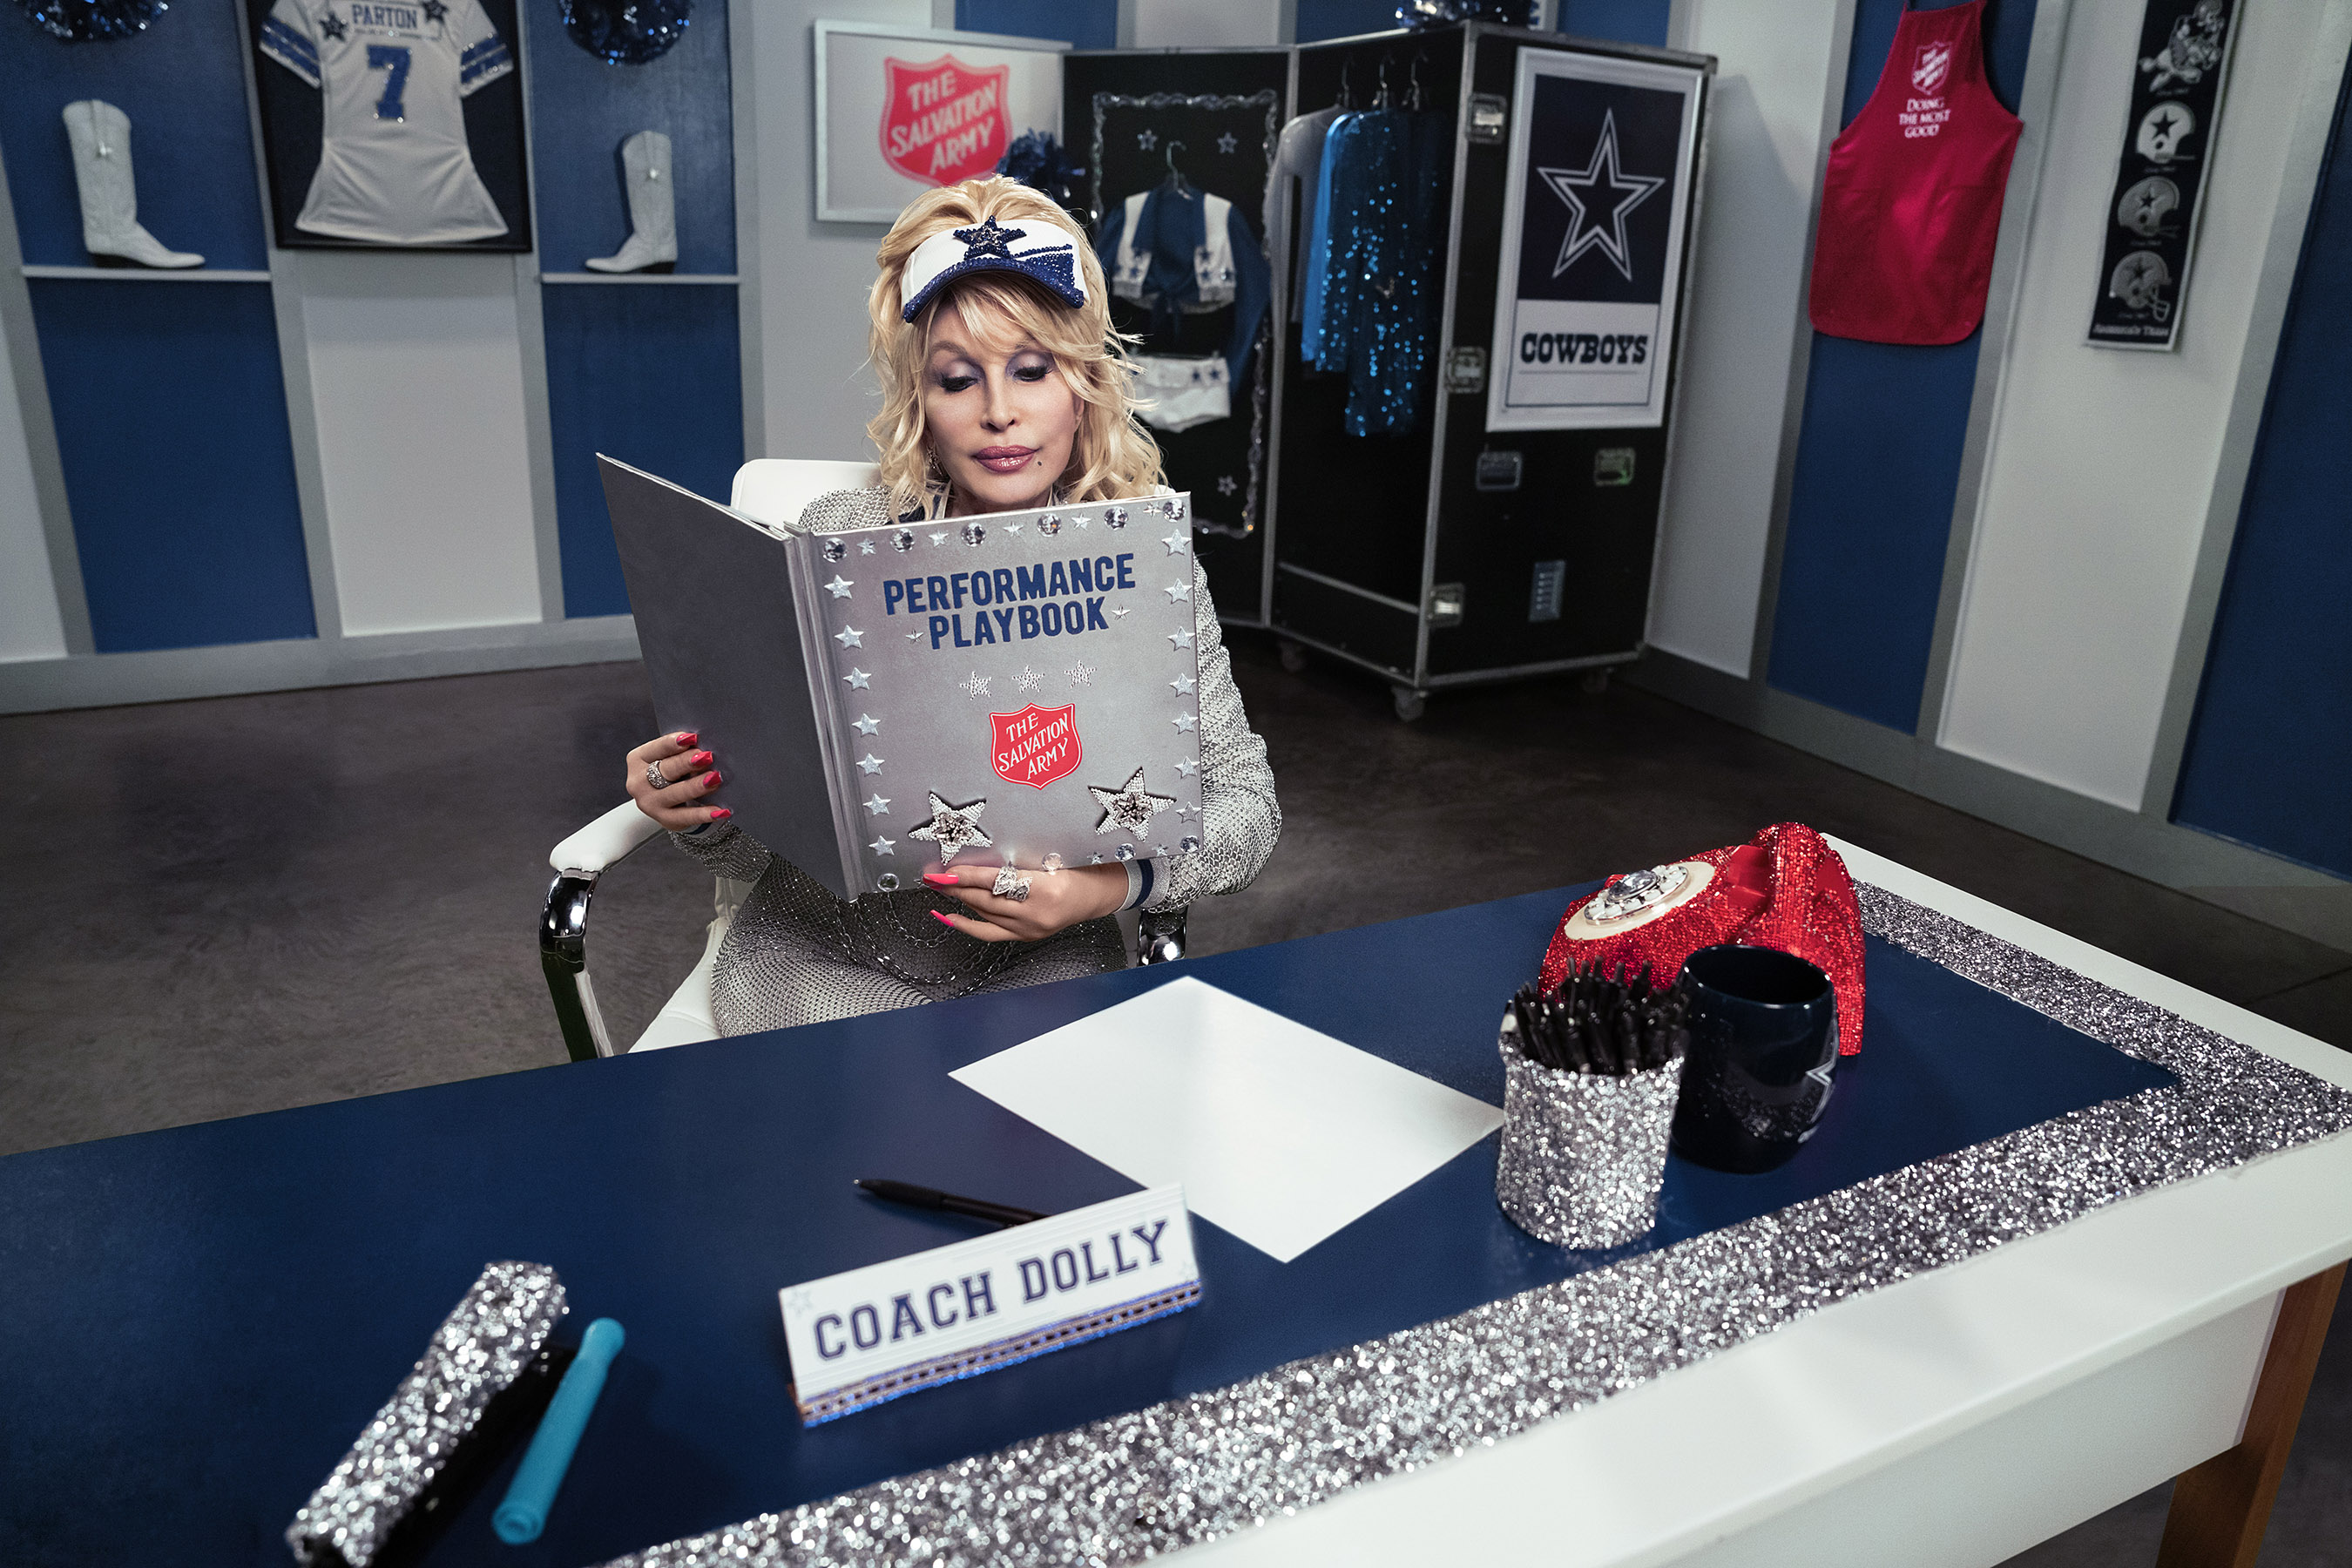 Dolly Parton reviews a playbook in the Dallas Cowboys locker room